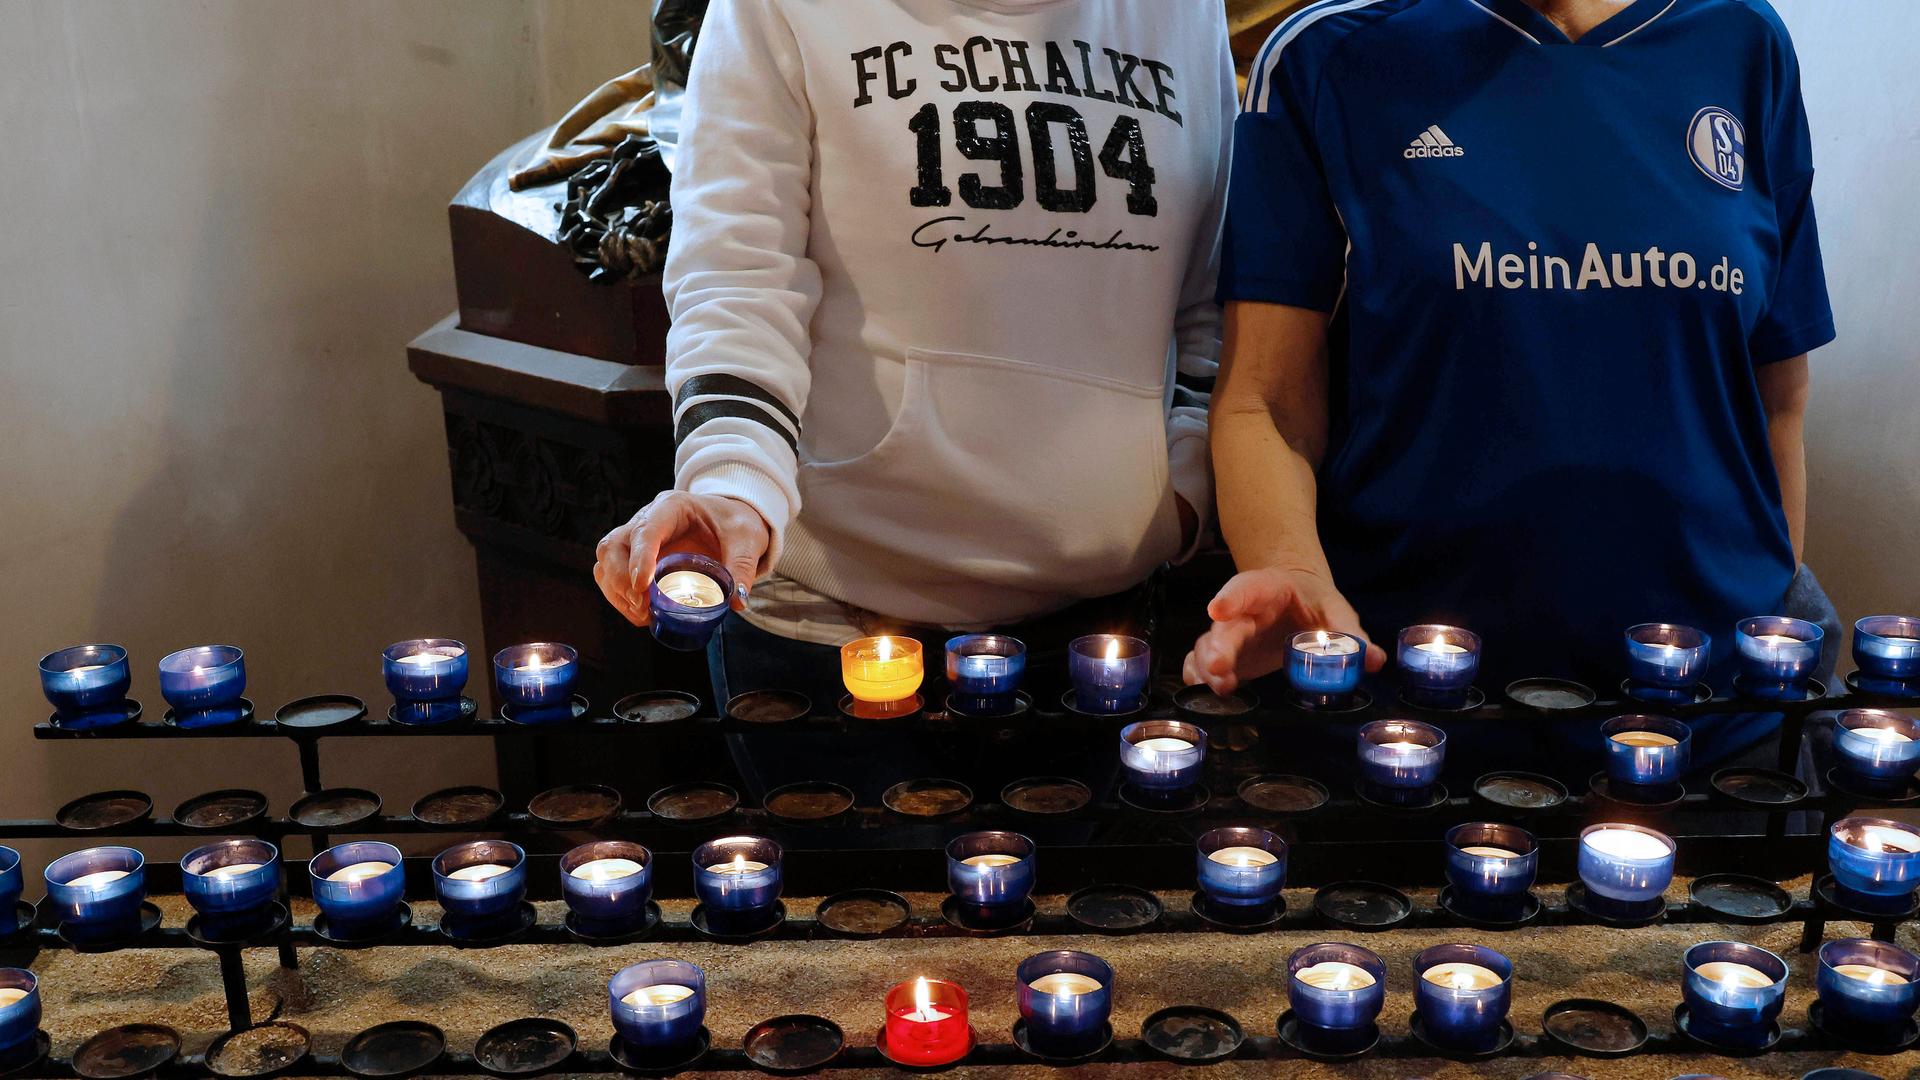 Zu sehen sind zwei Personen in Fankleidung von Schalke 04. Sie stehen vor einer Reihe an blau-weißen Teelichtern in einer Kirche. 